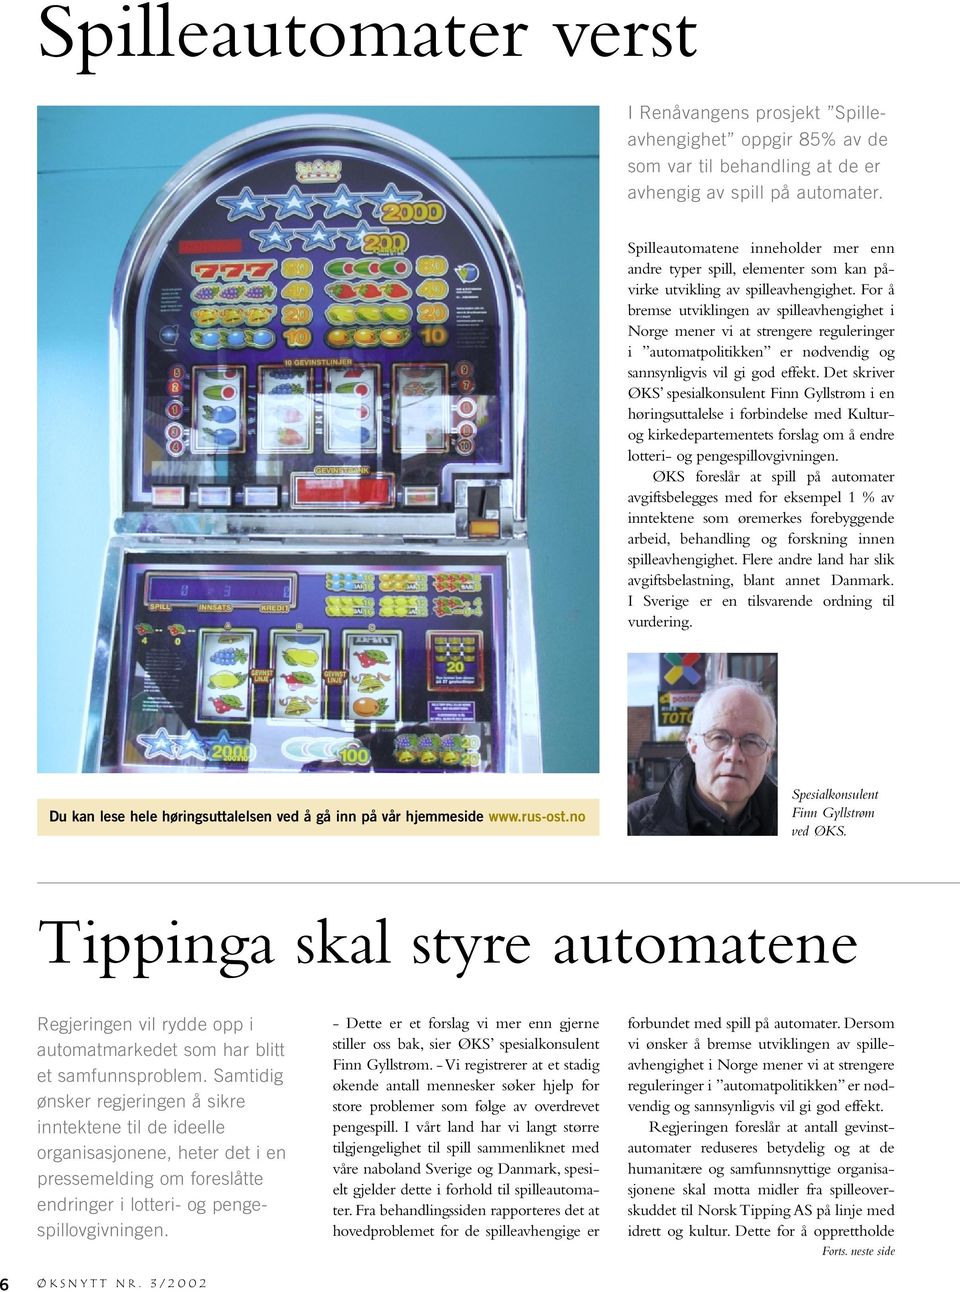 For å bremse utviklingen av spilleavhengighet i Norge mener vi at strengere reguleringer i automatpolitikken er nødvendig og sannsynligvis vil gi god effekt.